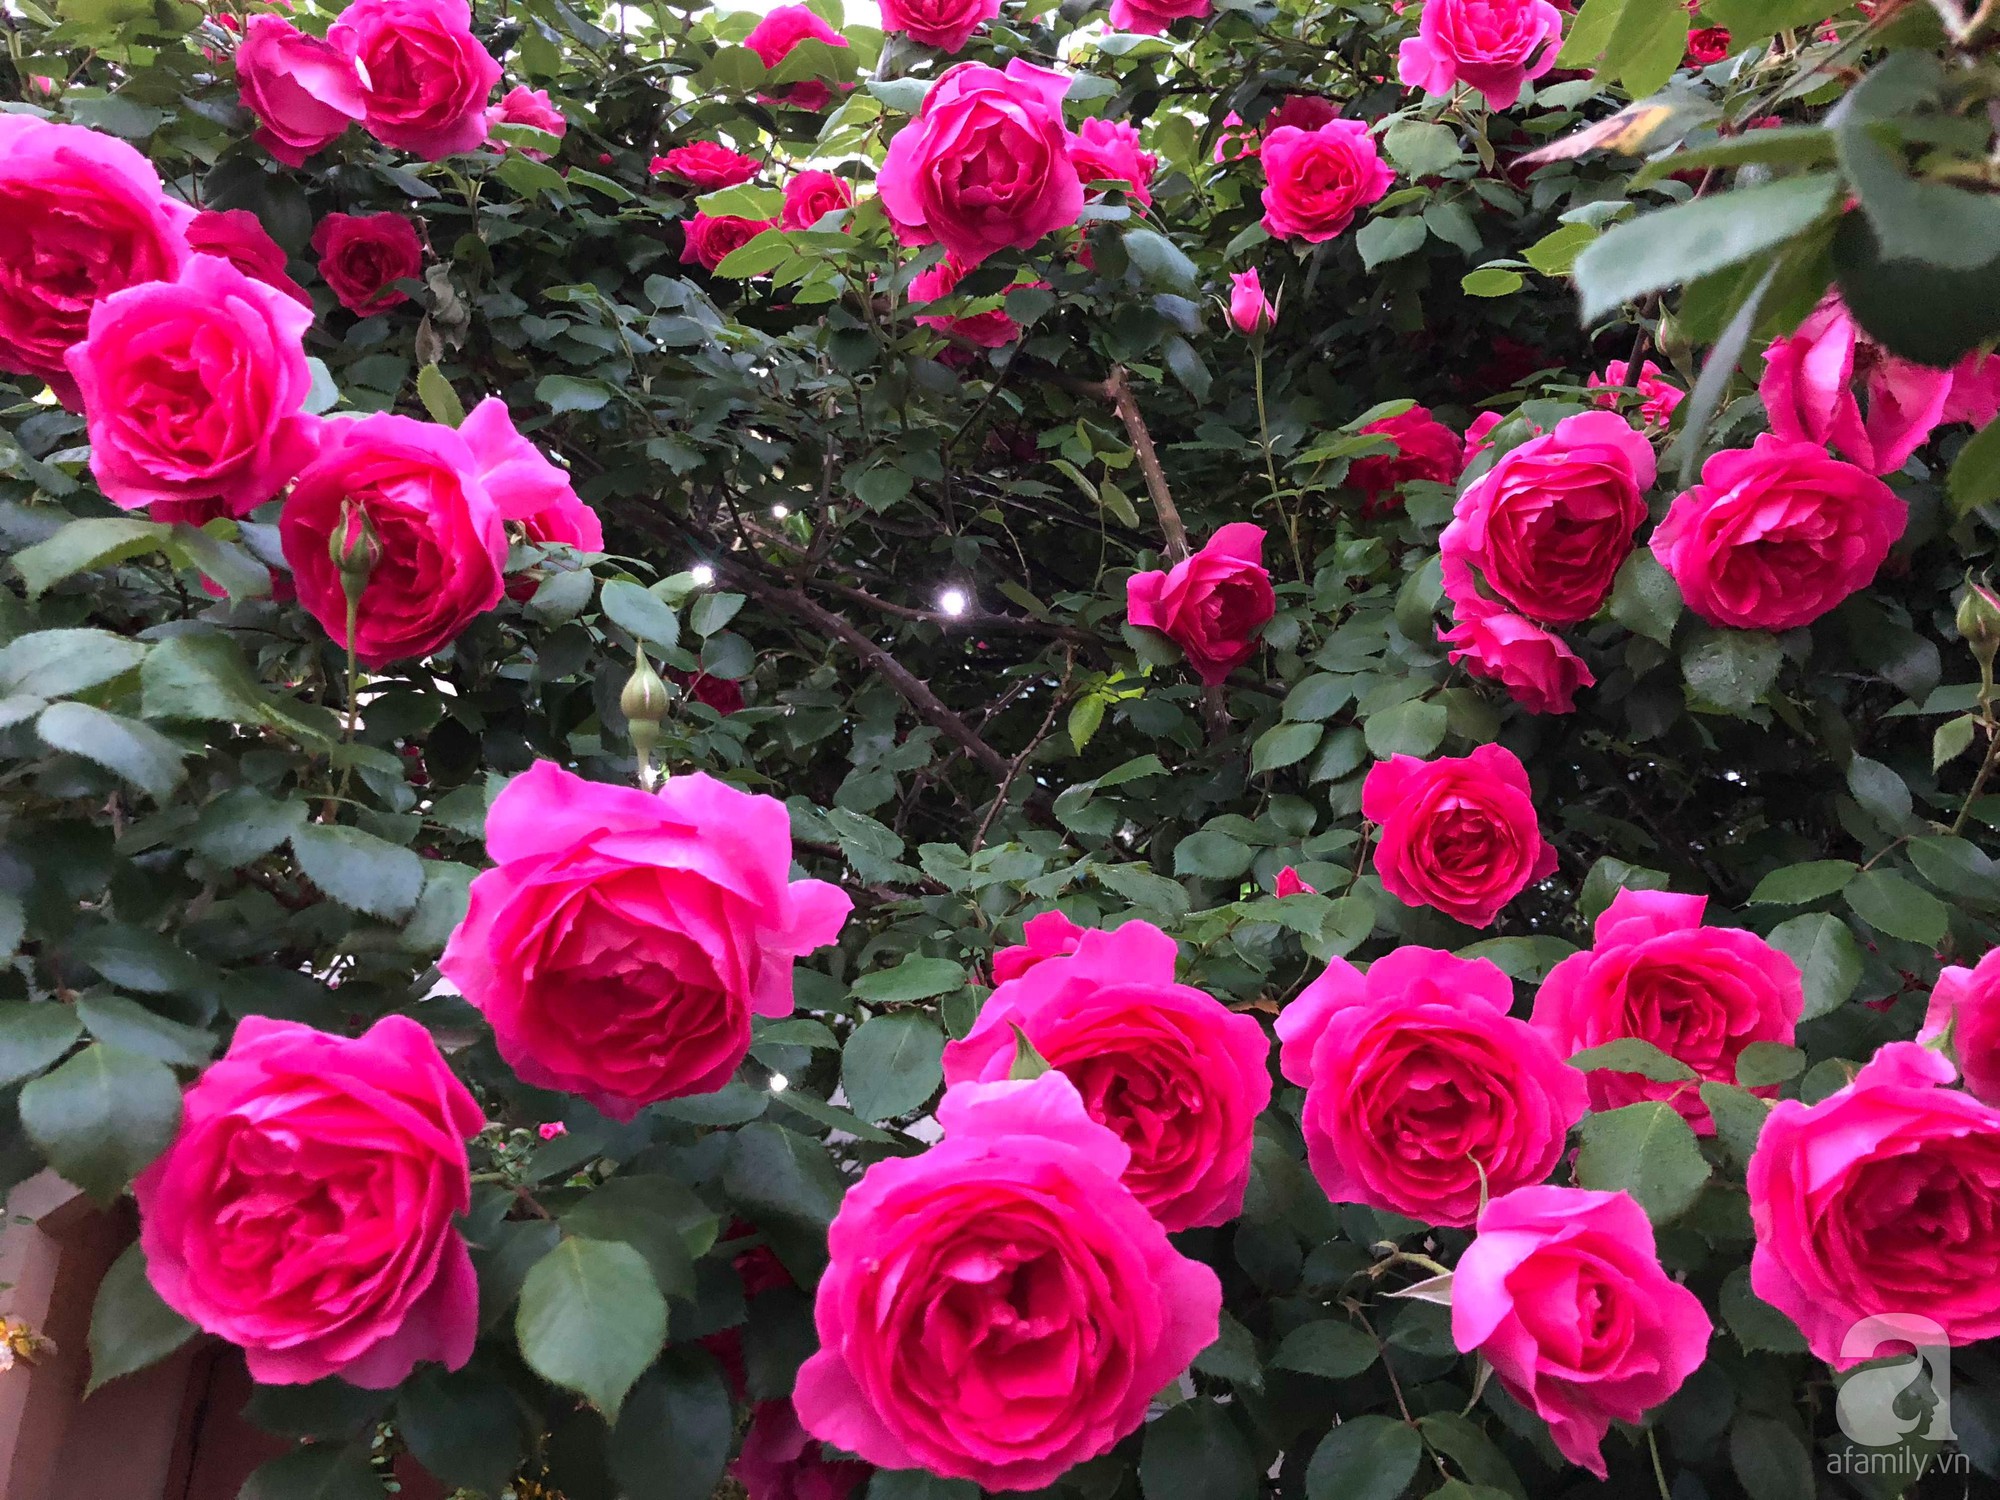 Khu vườn hoa hồng trước nhà đẹp như truyện cổ tích của người đàn ông Việt ở Nhật - Ảnh 6.